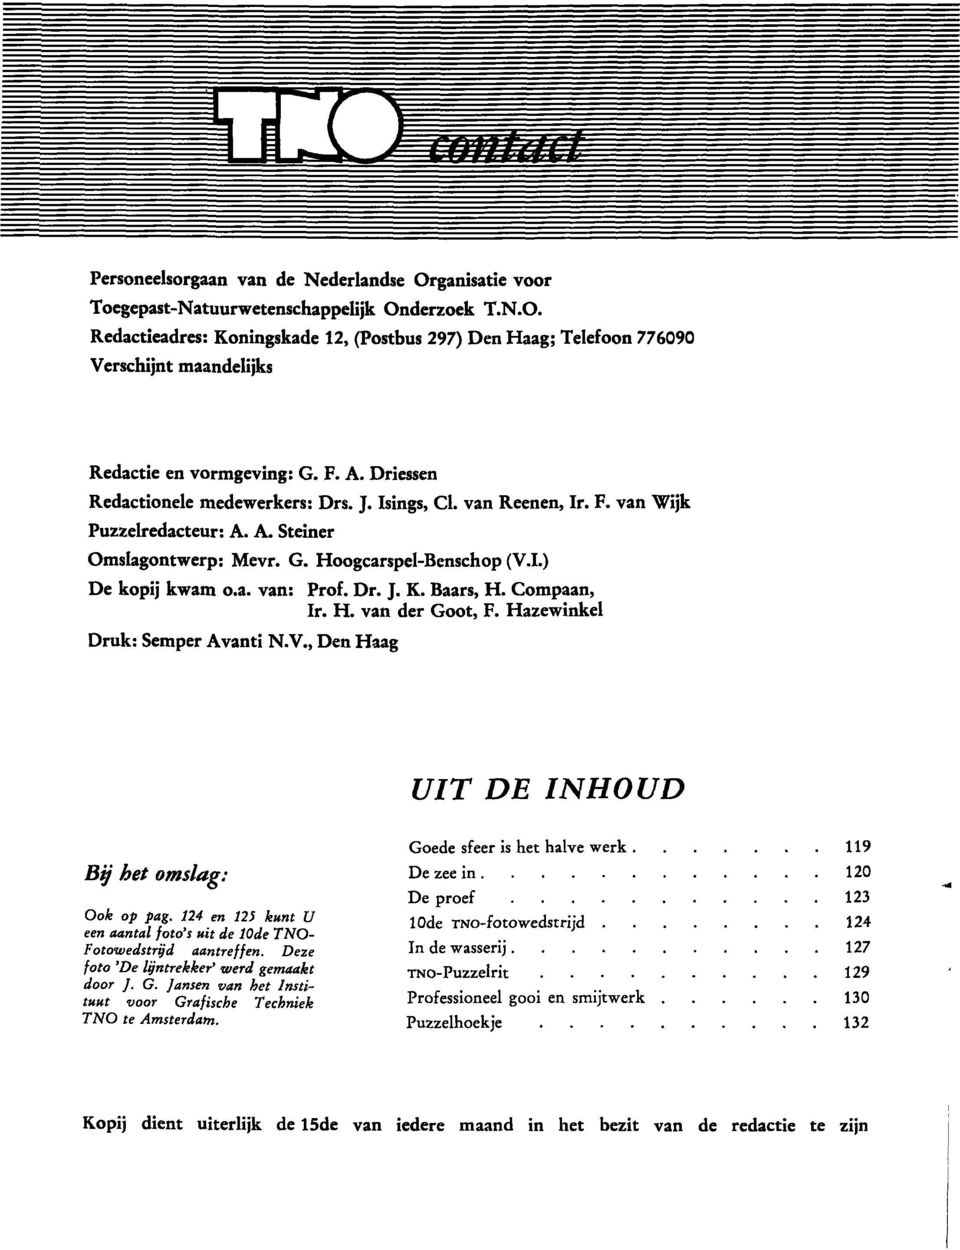 Dr. J. K. Baars, H. Compaan, Ir. H. van der Goot, F. Hazewinkel Druk: Semper Avanti N.V., Den Haag UIT DE INHOUD By het omslag: Ook op pag.